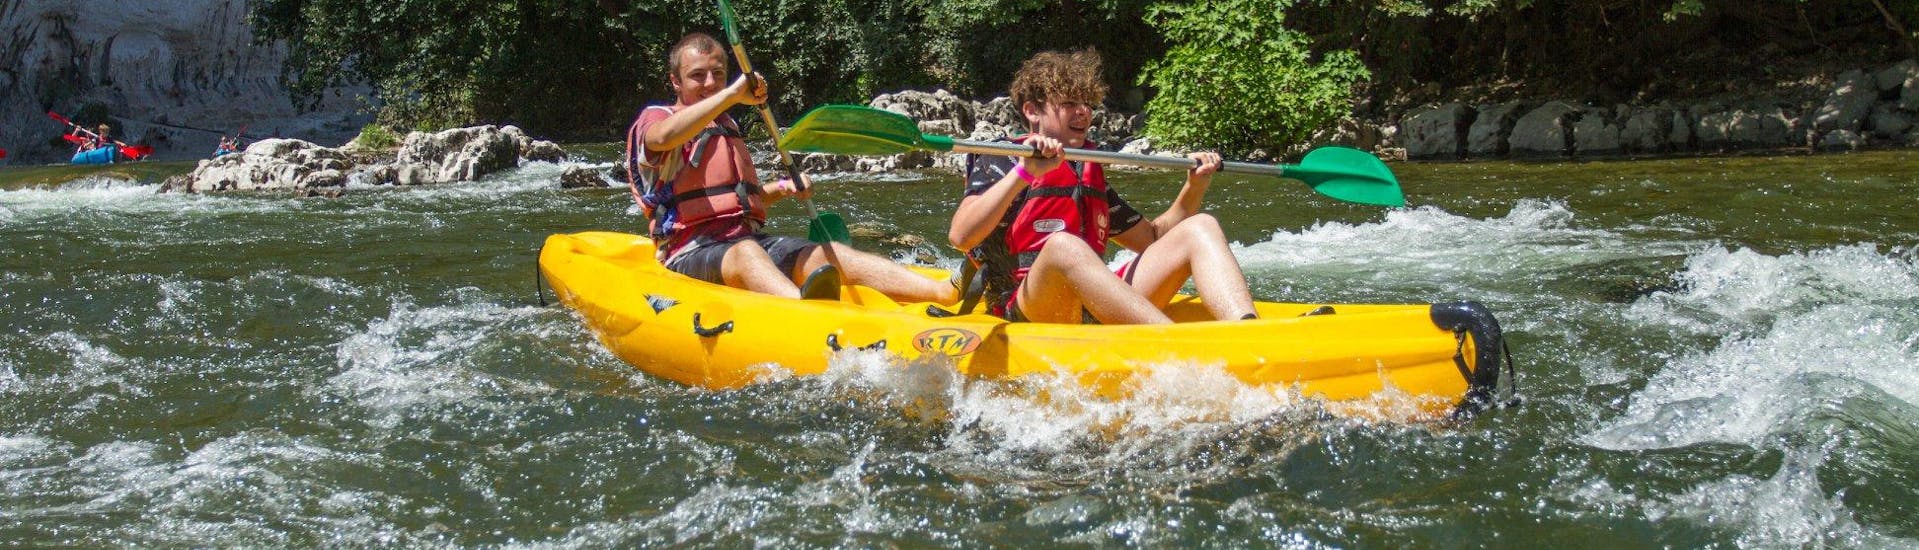 Kayak y canoa de 12 km en Ardèche - Maxi tour.